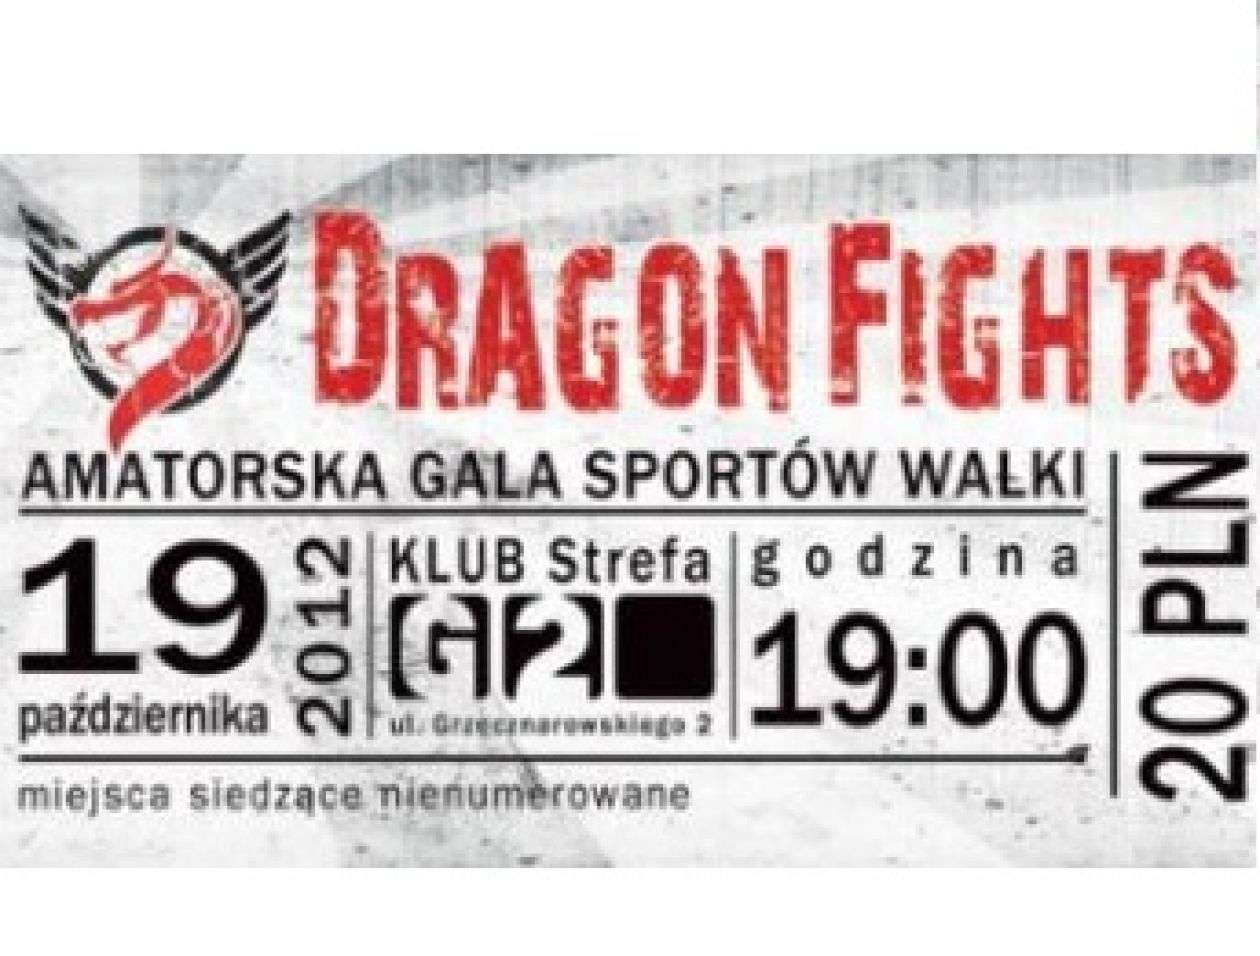 Amatorska Gala Sportów Walki Dragon Fights